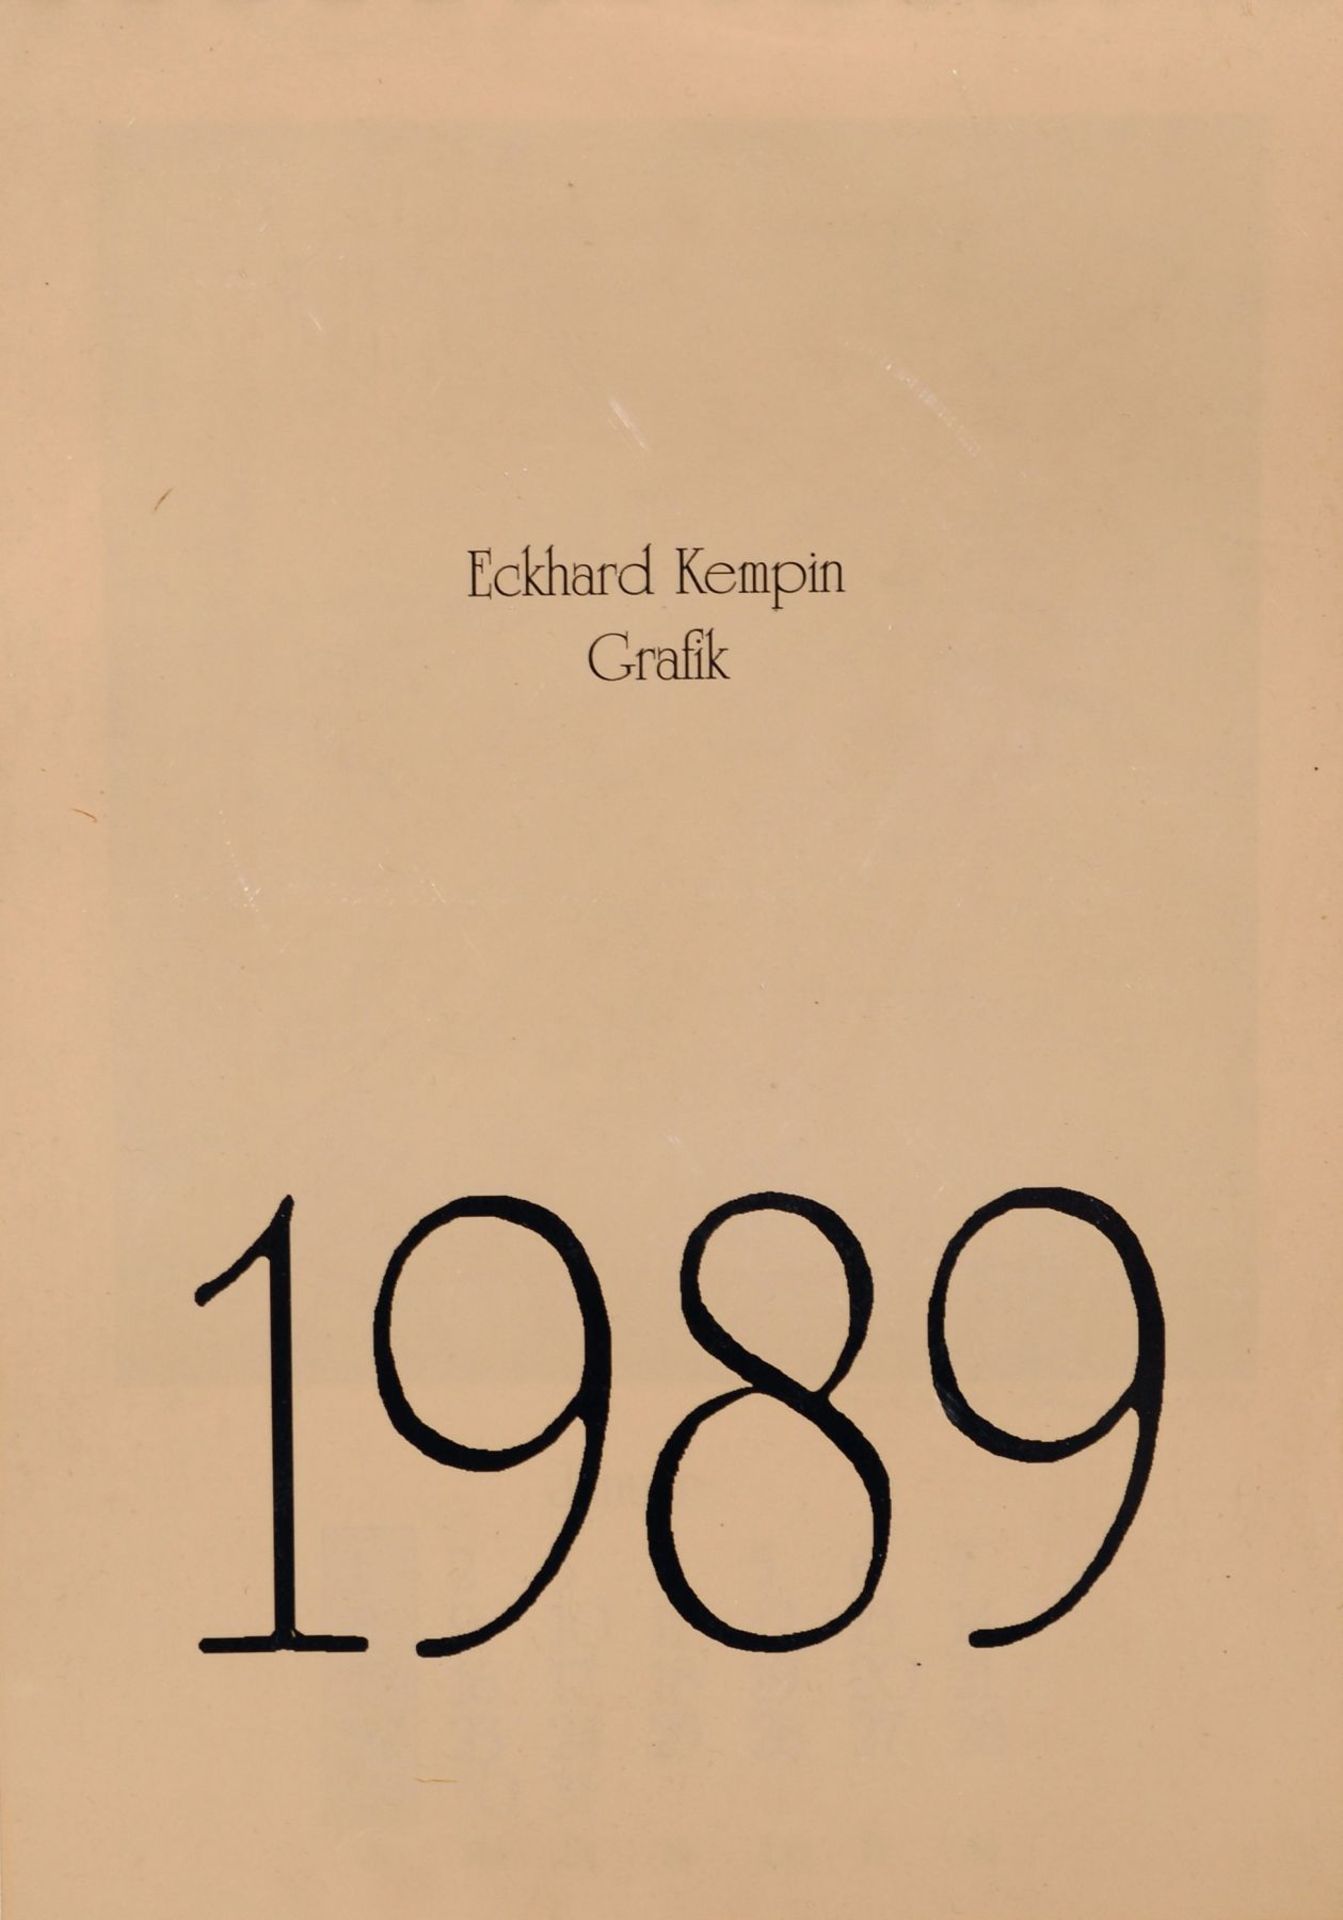 Eckhard Kempin "Grafik". 1989. Künstlerkalender mit 12 Farbmonotypien und Kalendarium sowie einem